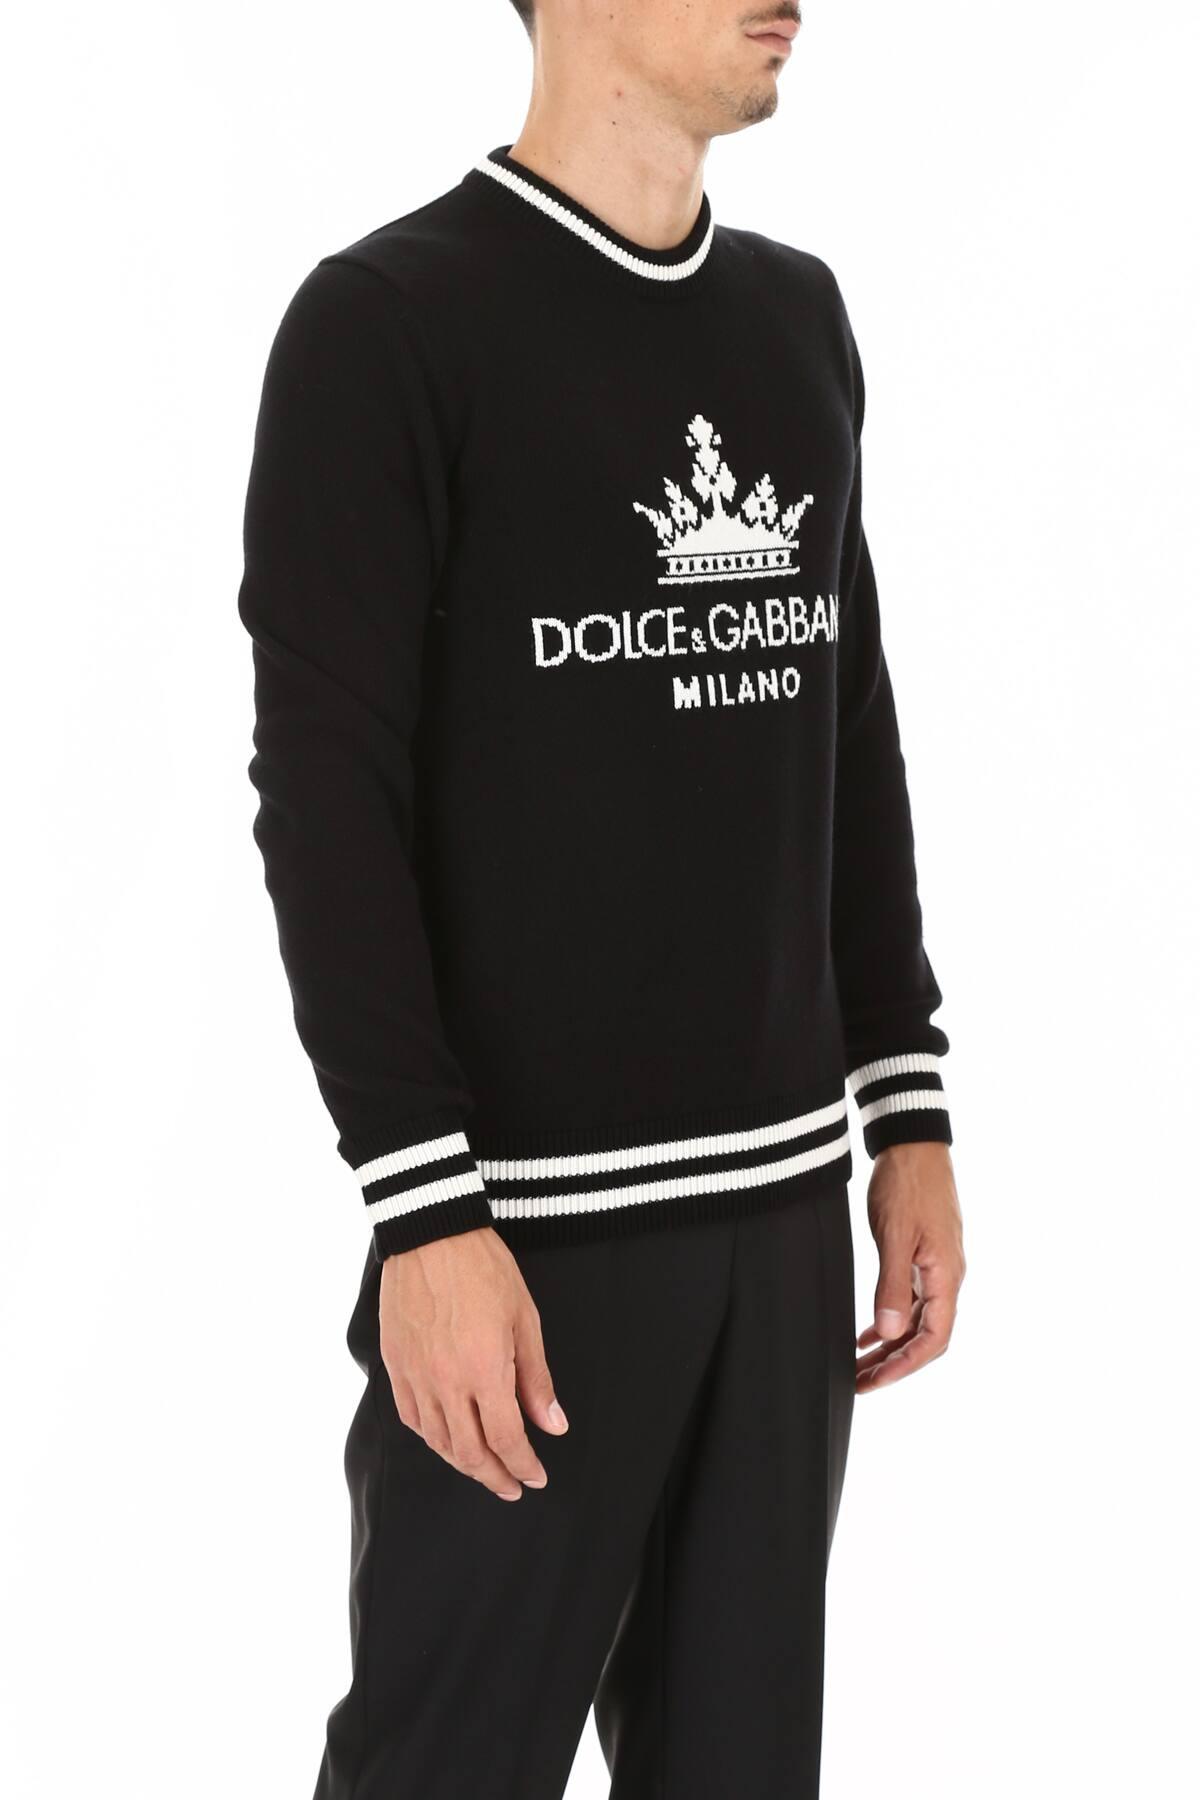 Dolce & Gabbana Dg Milano Pullover in Black,White (Black) for Men | Lyst